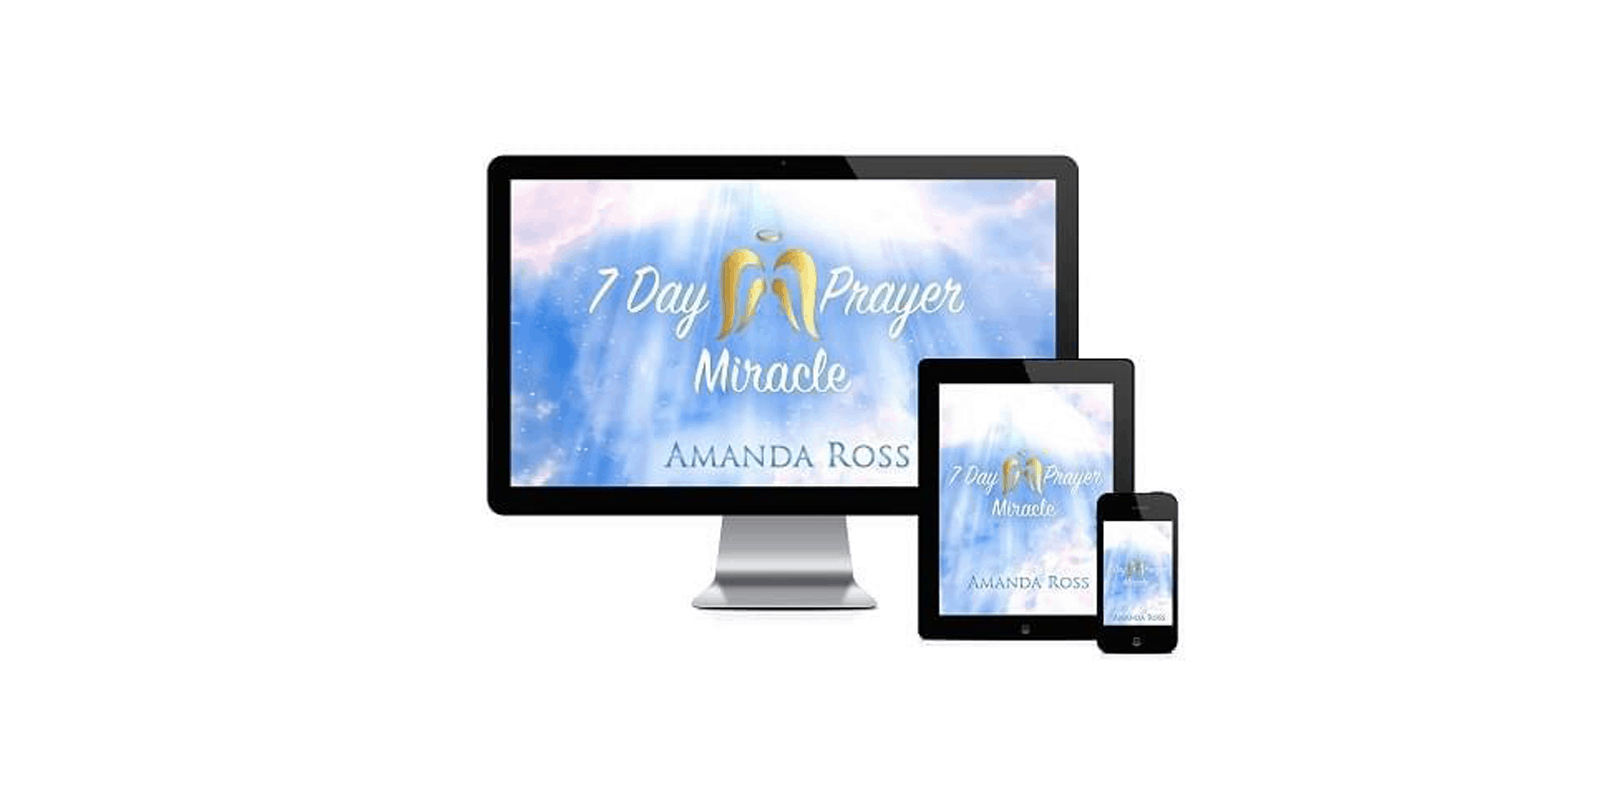 7 Day Prayer Miracle Reviews